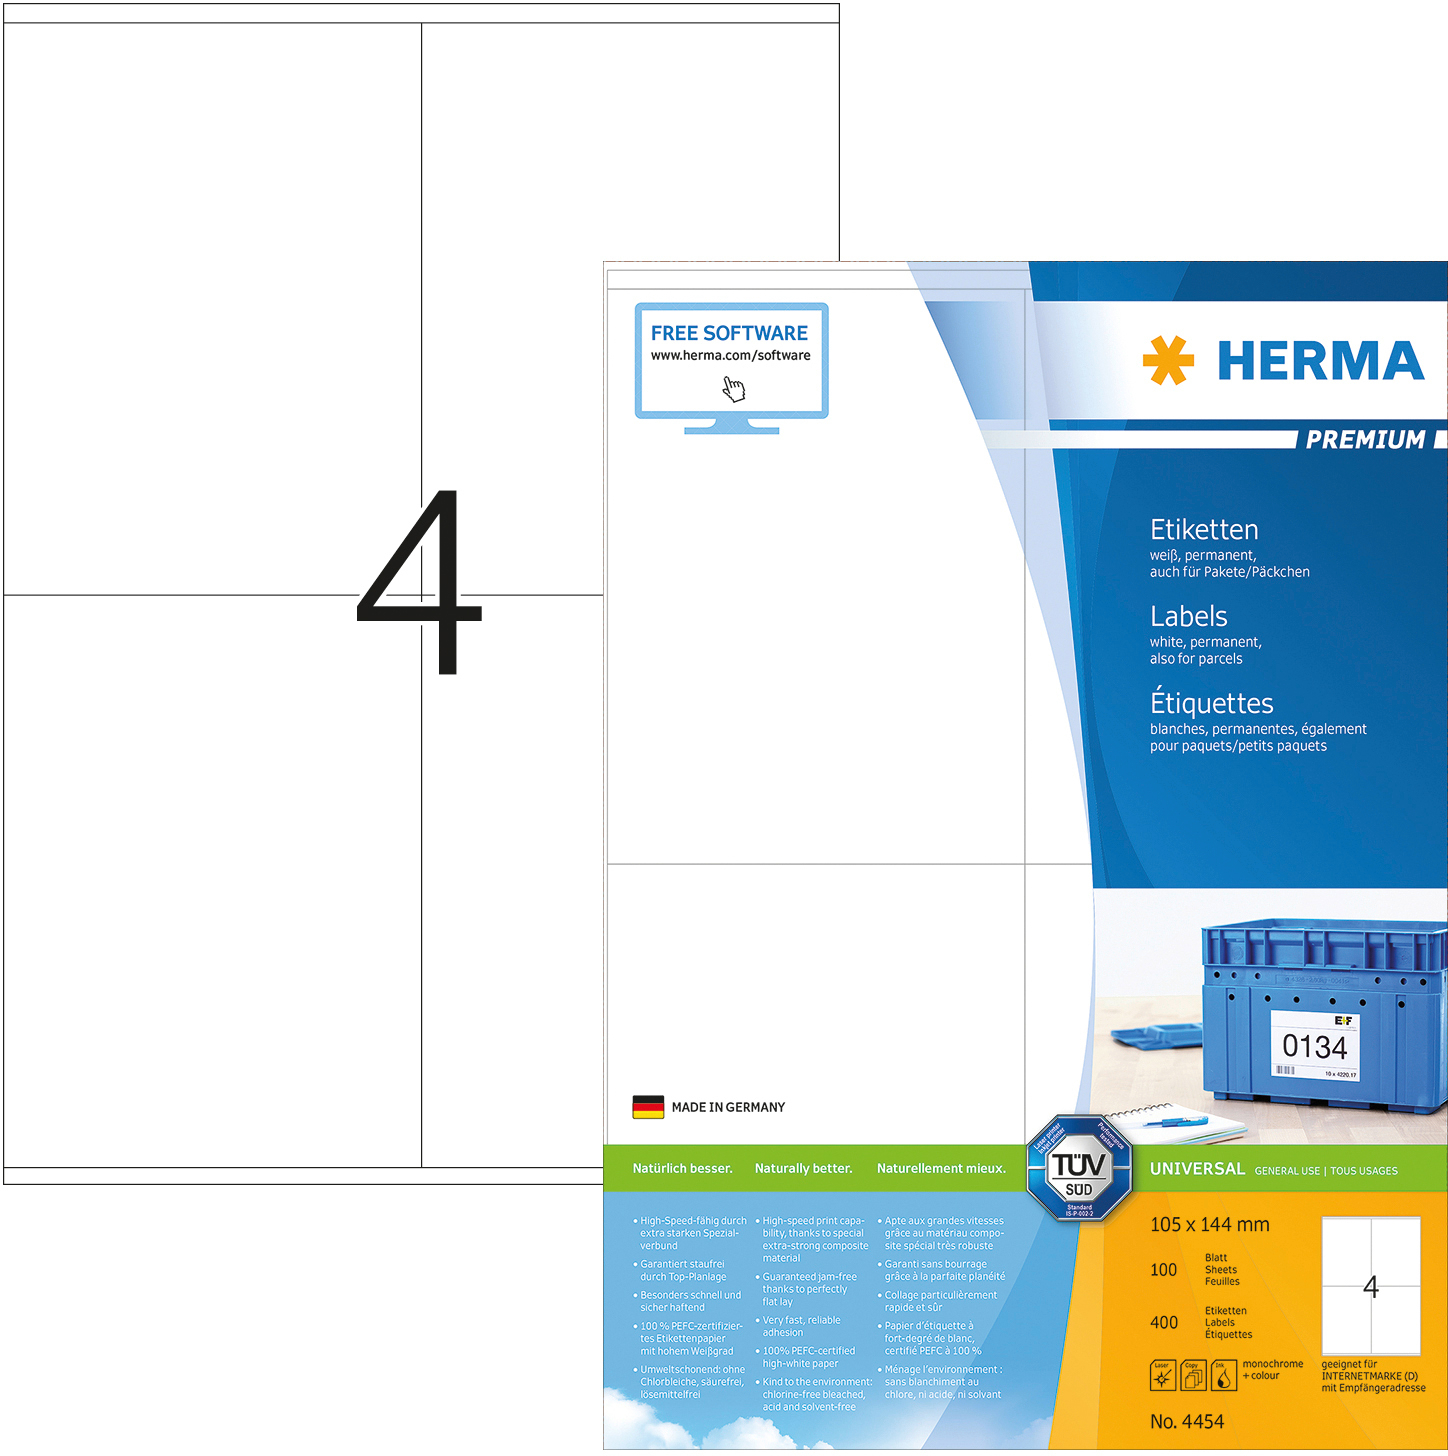 HERMA Étiquettes univers. 105x144mm 4454 blanc 400 pcs./100 flls. blanc 400 pcs./100 flls.